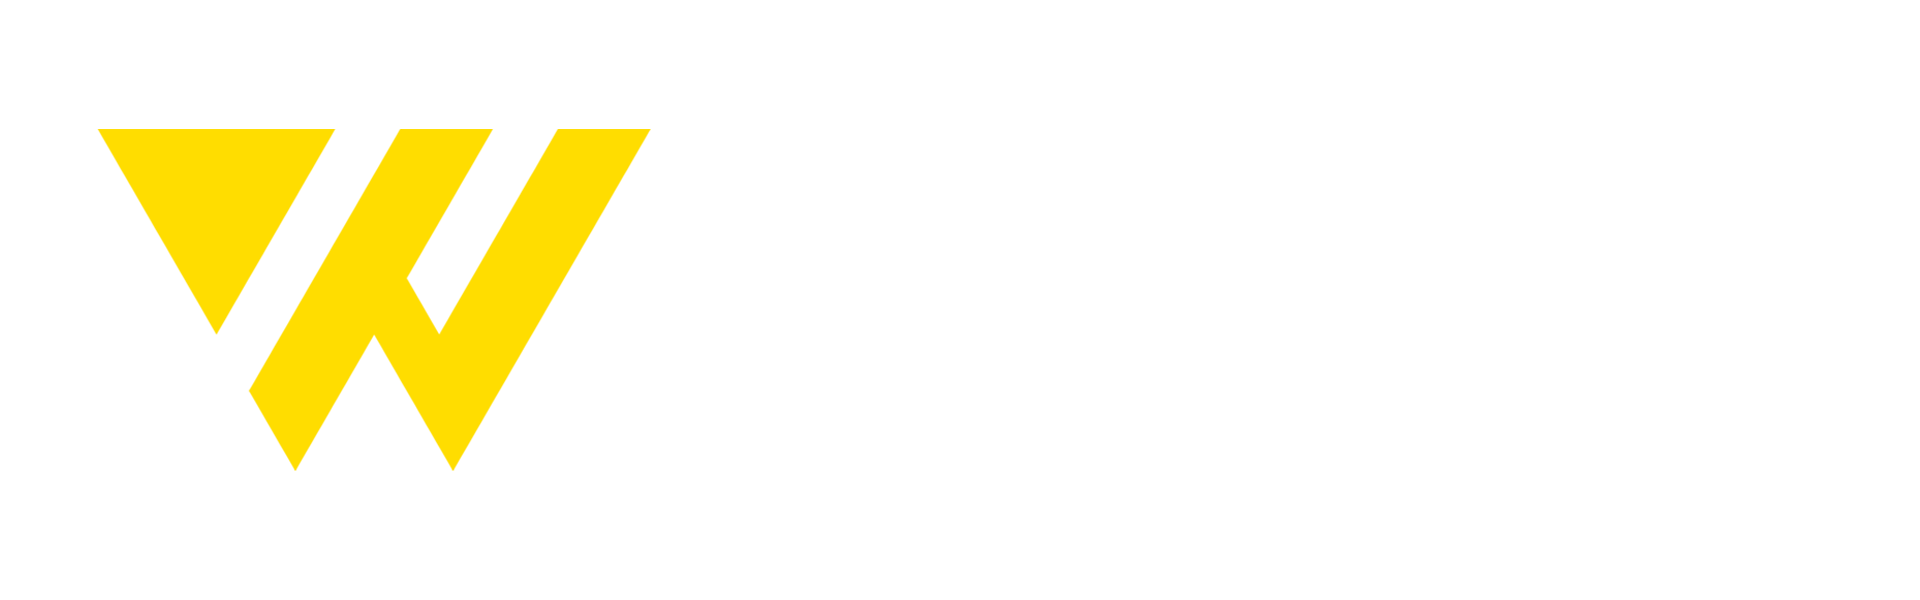 Copenhagen Workwear